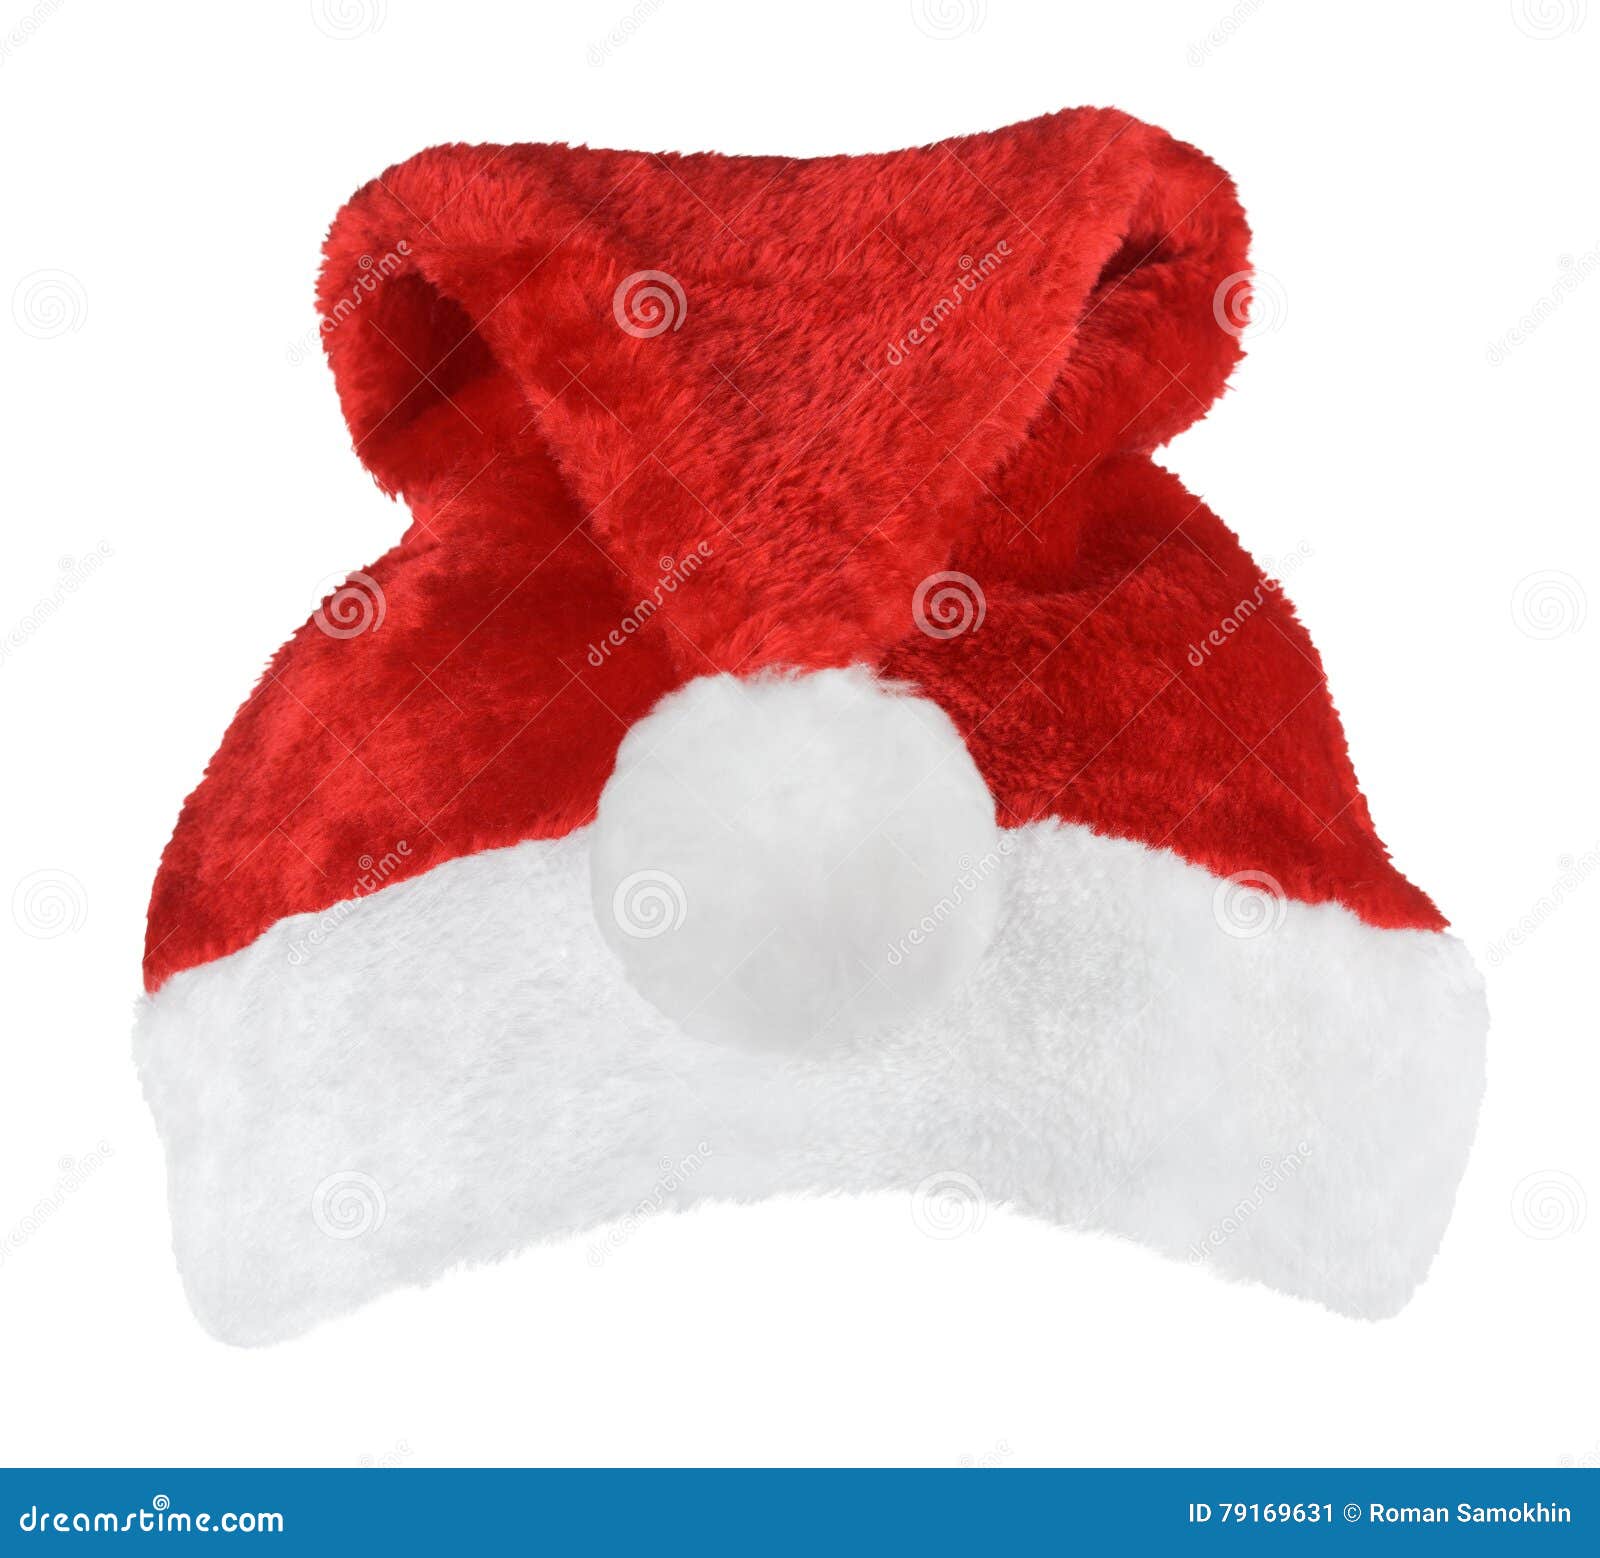 De rode hoed van Santa Claus. De rode die hoed van Santa Claus op witte achtergrond wordt geïsoleerd